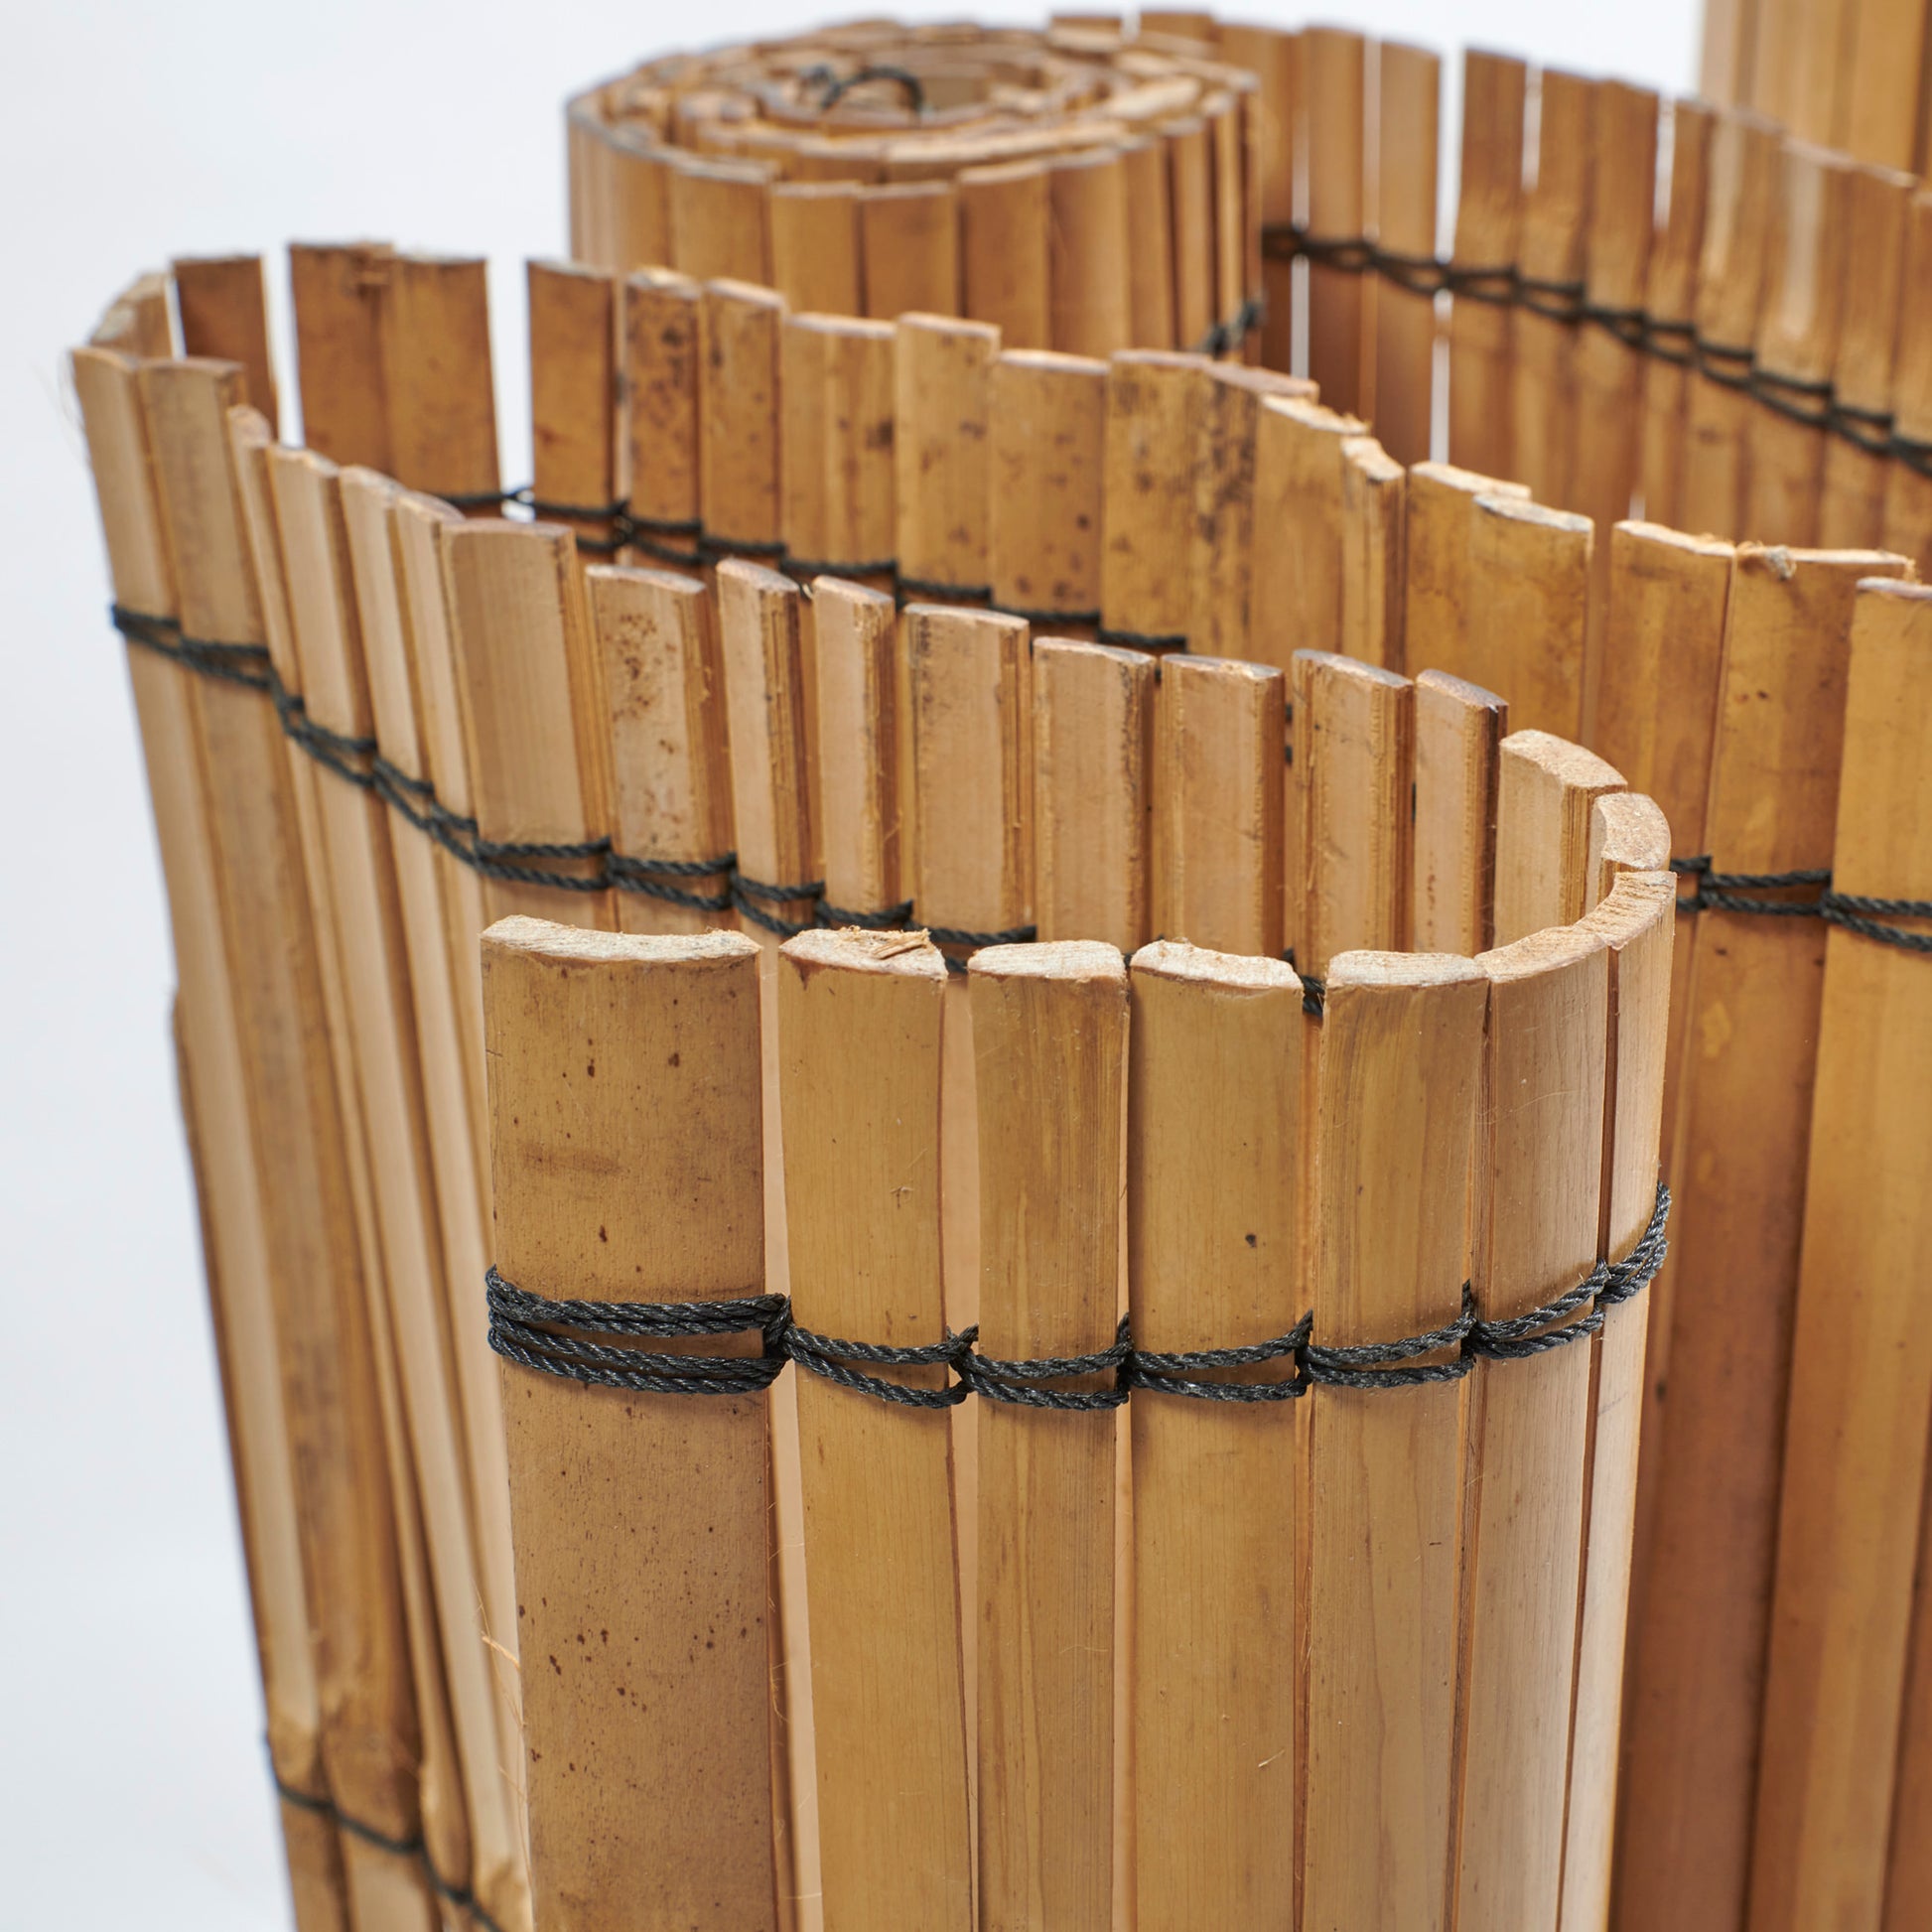 Detailfoto der zu einem Sichtschutz aneinander geknüpfte Bambusleisten